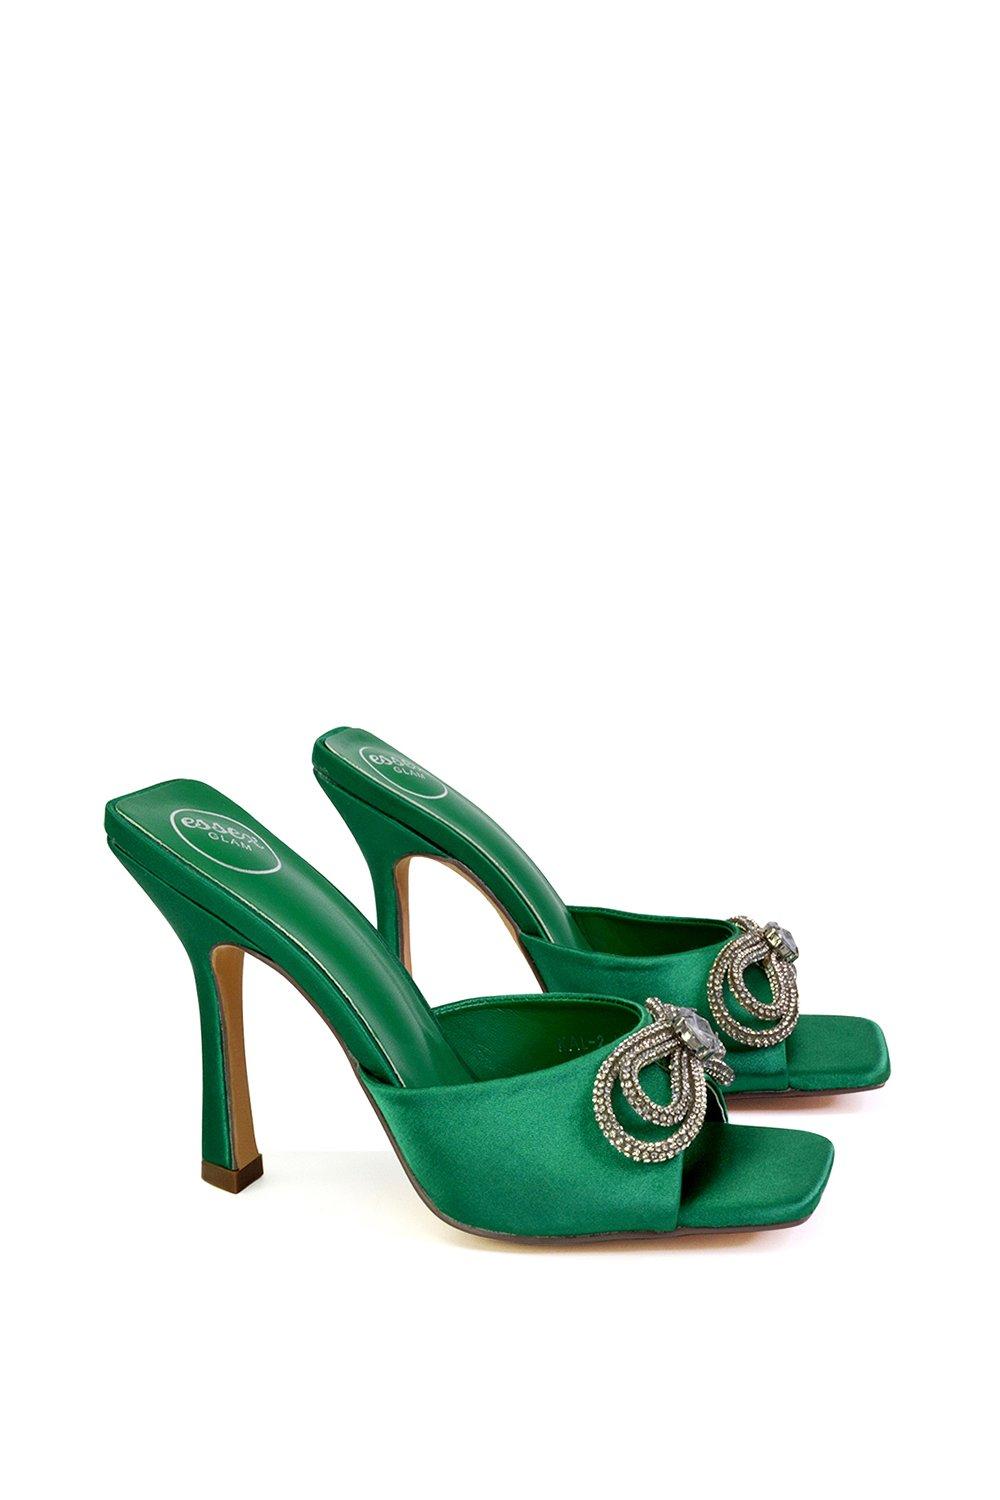 Босоножки-мулы 'Elsa' на квадратном каблуке с бантом и стразами XY London, зеленый туфли на каблуках rosalia mule frye камень